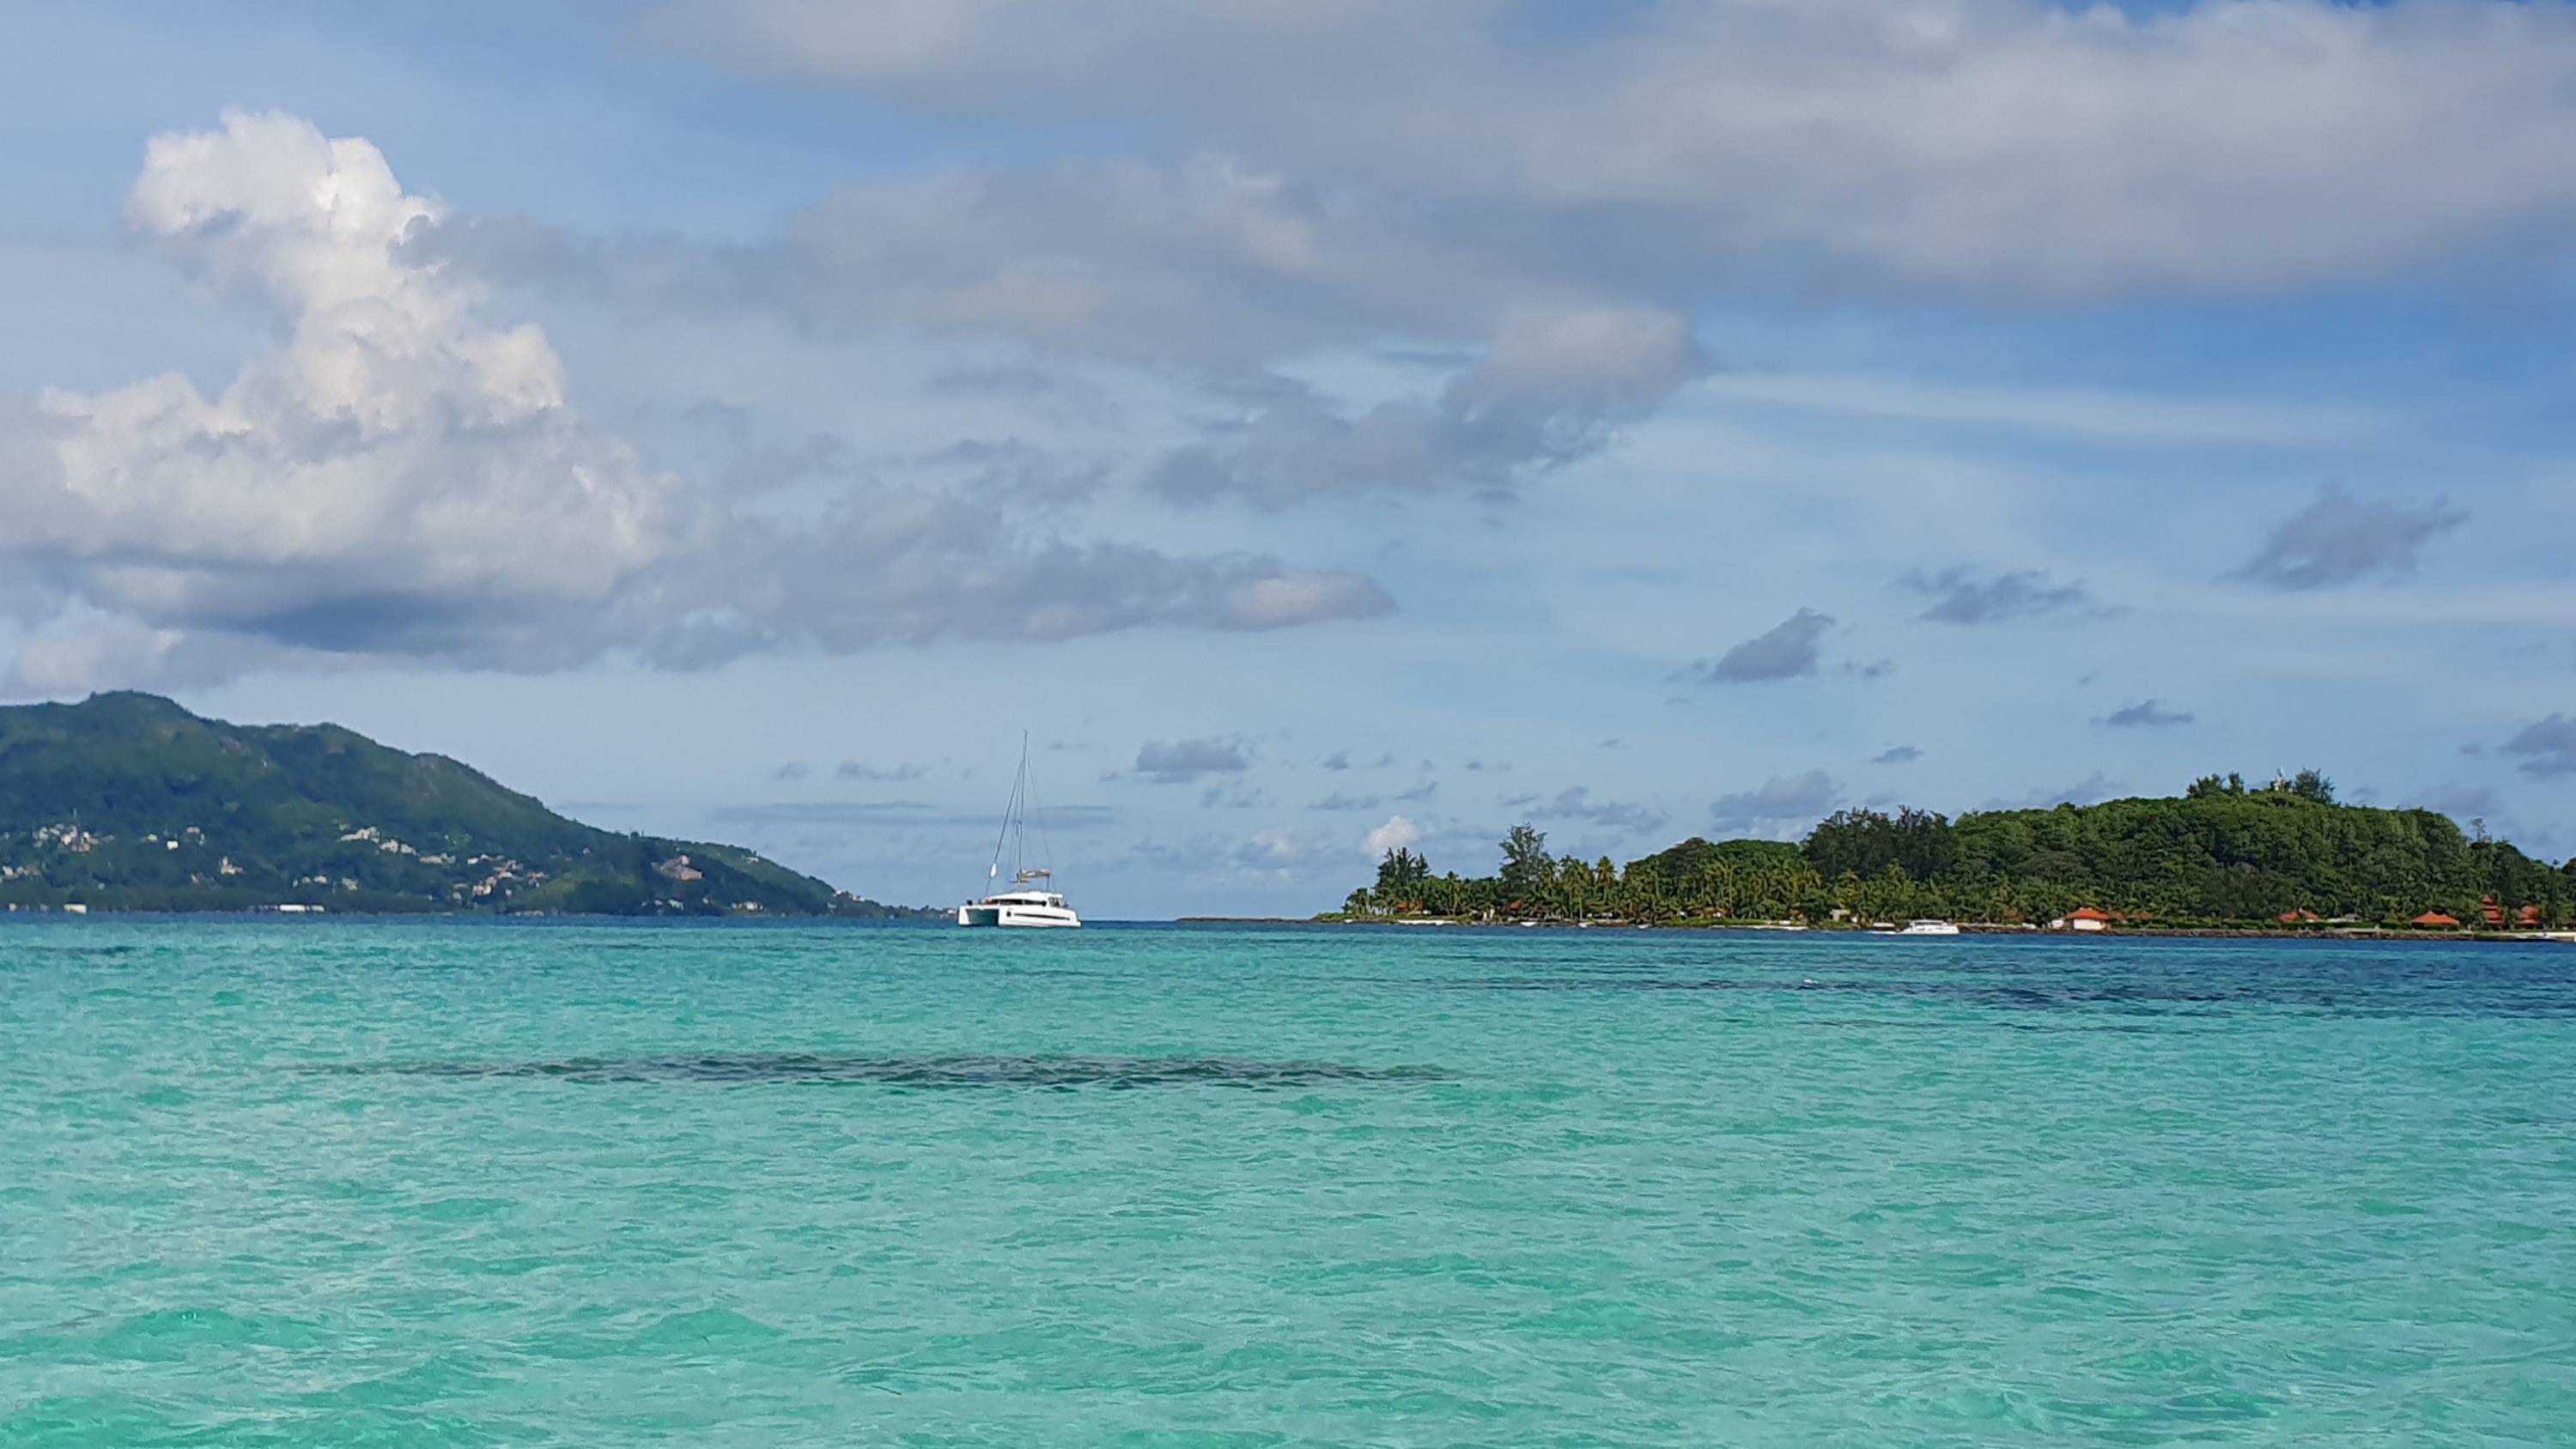 Katamaran vor Anker auf türkisfarbenen Wasser. Im Hintergrund zwei Inseln.